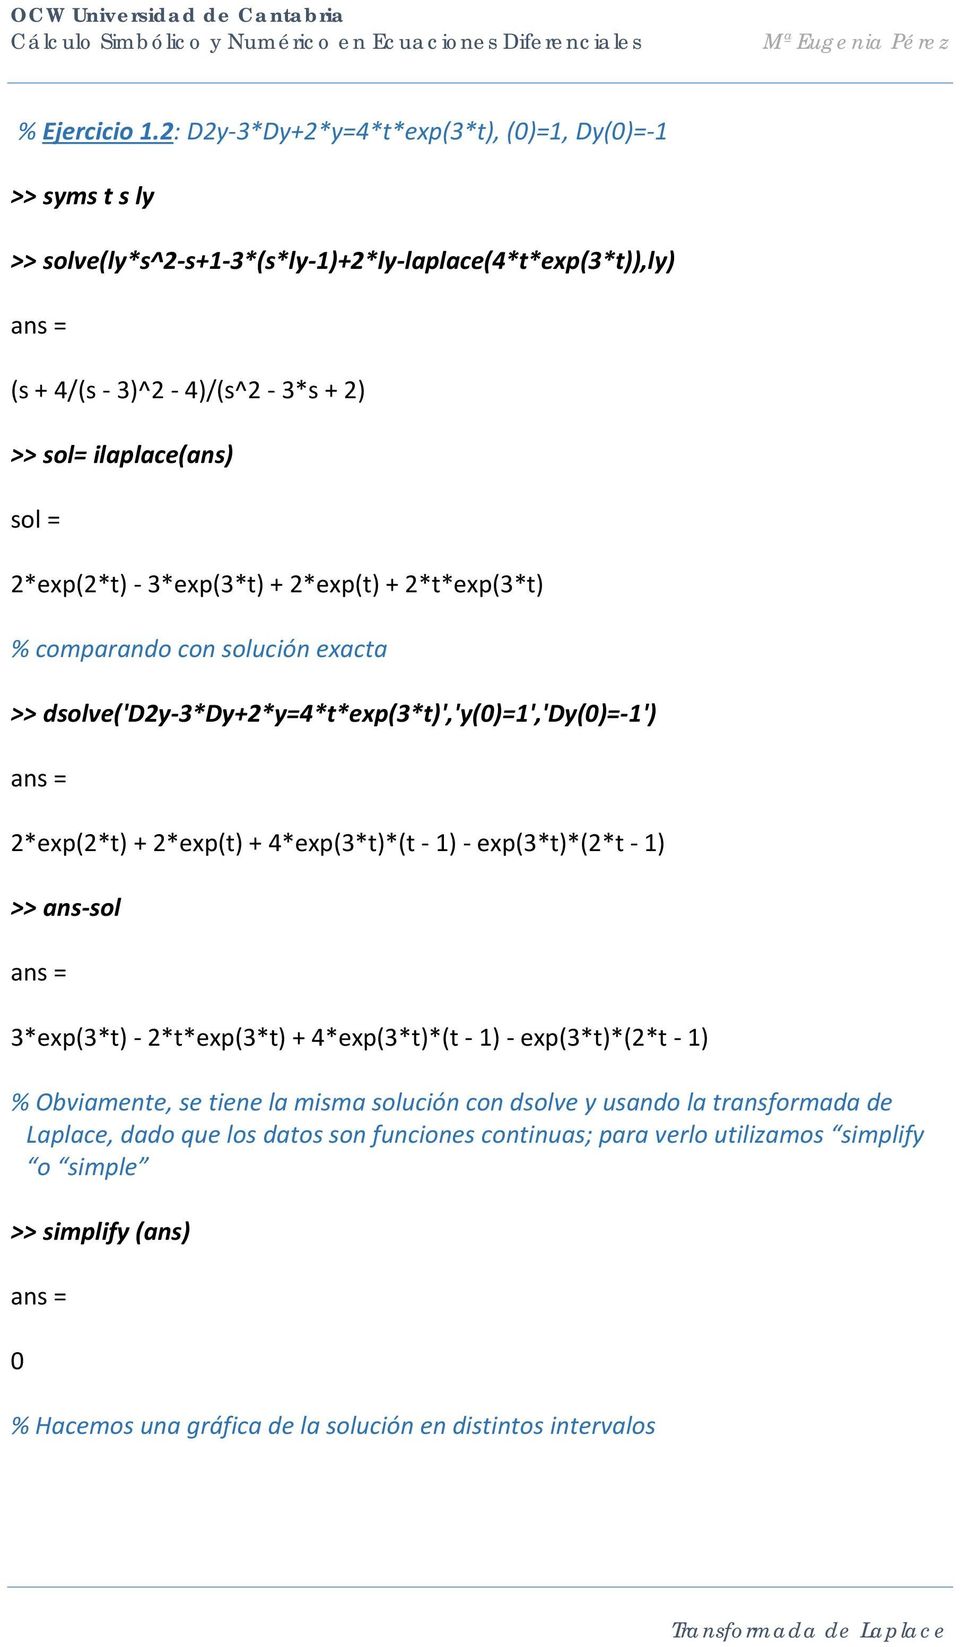 2*exp(2*t) - 3*exp(3*t) + 2*exp(t) + 2*t*exp(3*t) % comparando con solución exacta >> dsolve('d2y-3*dy+2*y=4*t*exp(3*t)','y(0)=1','dy(0)=-1') 2*exp(2*t) + 2*exp(t) + 4*exp(3*t)*(t - 1)